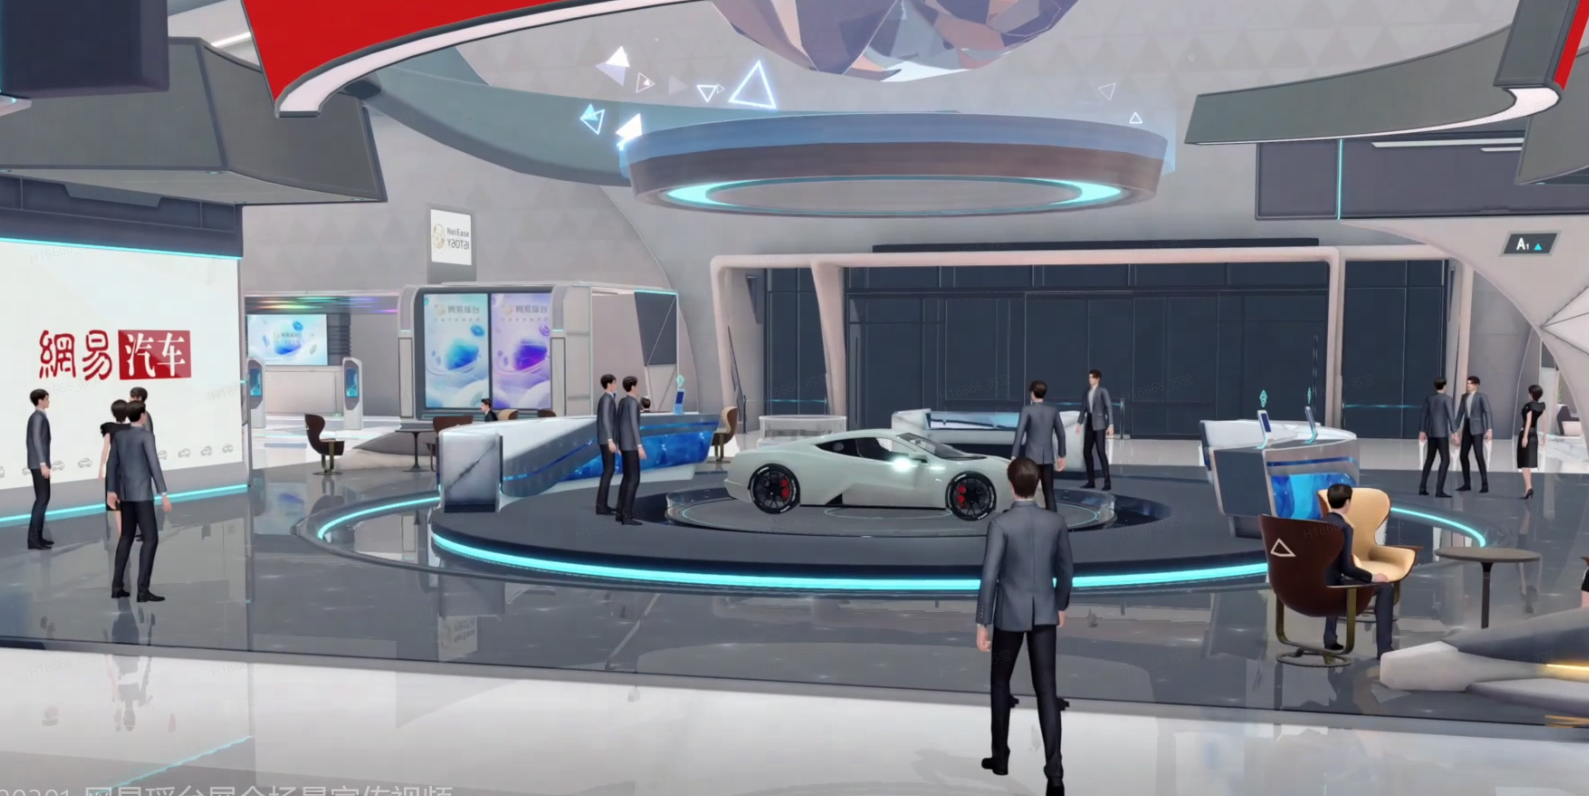 这是一张展示现代汽车展厅的图片，里面有多位参观者，展出了一辆白色的概念车，环境科技感强，装饰现代且未来感十足。